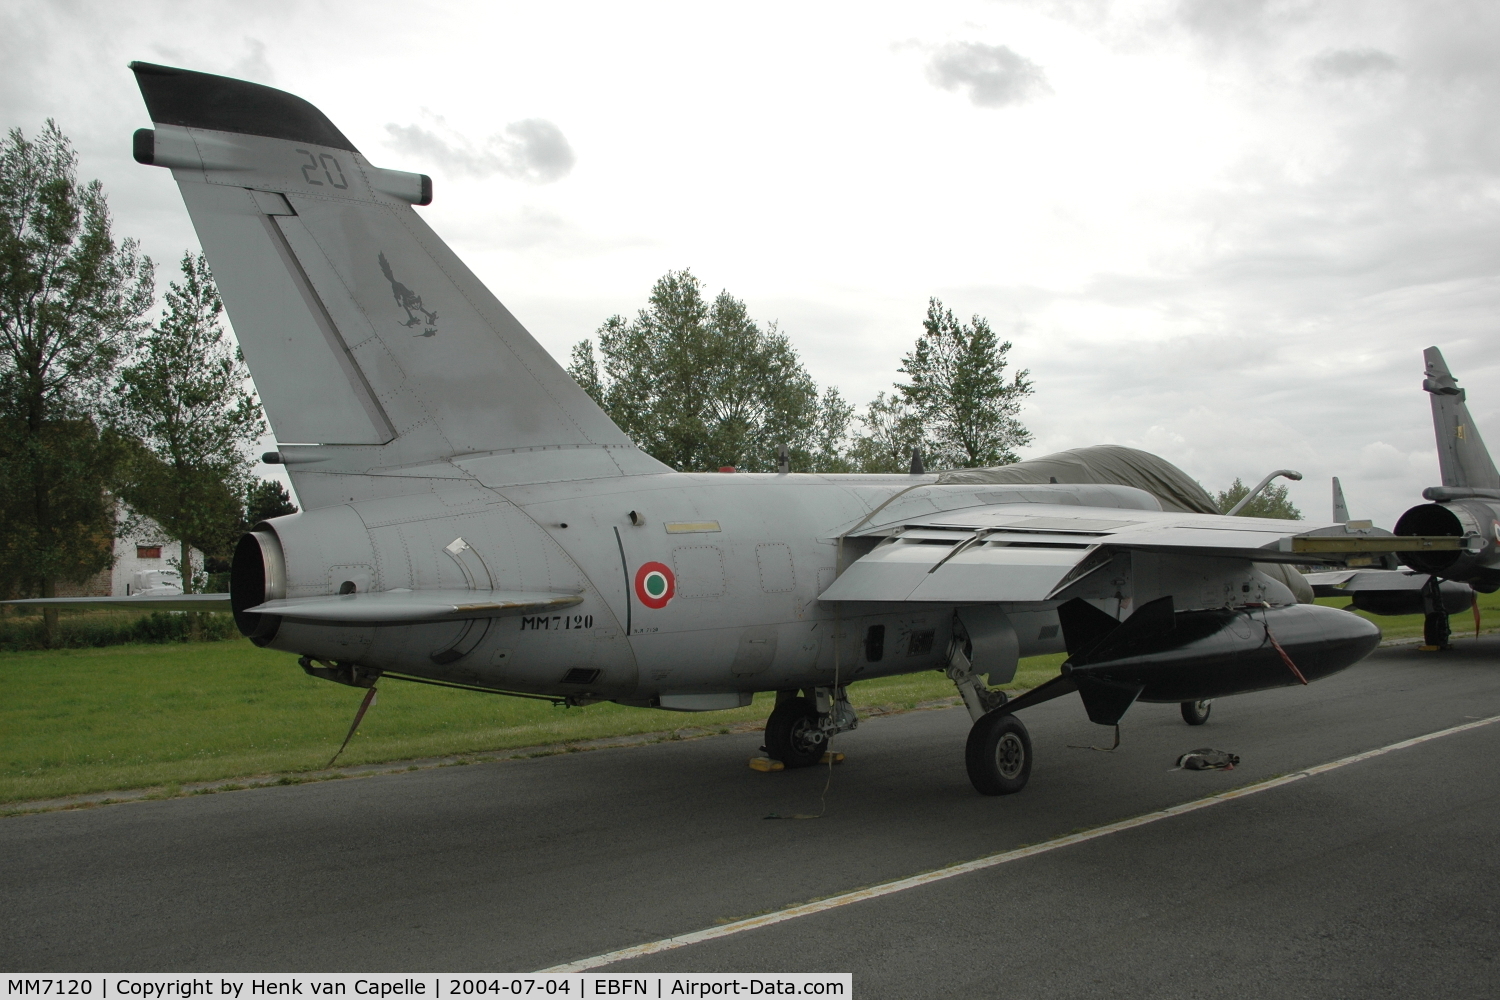 MM7120, 1990 AMX International AMX C/N IX032, Italian Air Force AMX of 132° Gruppo at Koksijde Air Base, Belgium.